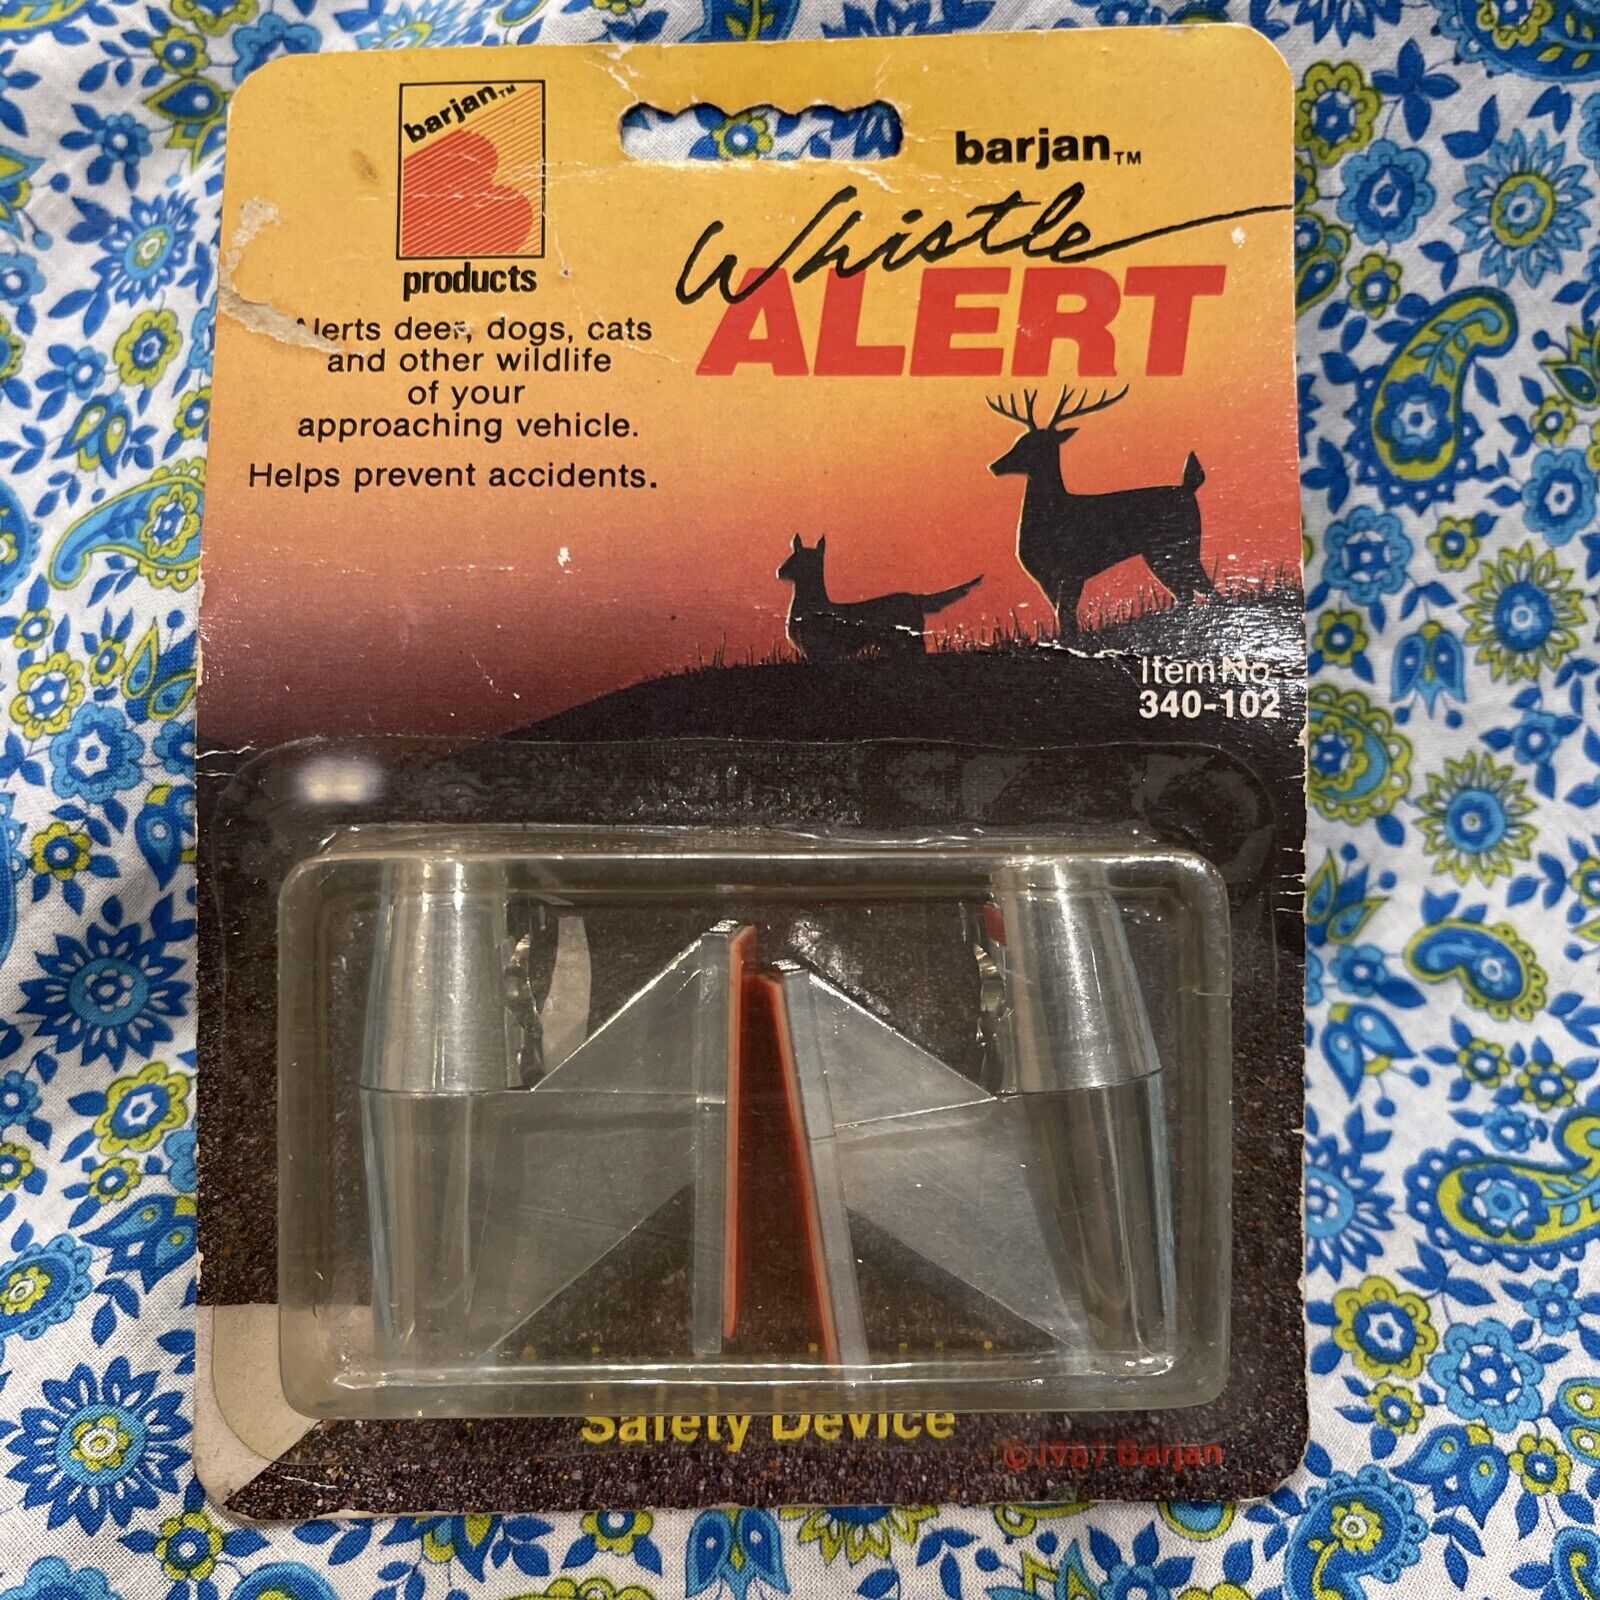 Vintage Barjan Whistle Alert Animal Safety Device “Chrome” Color #340-102 |  eBay